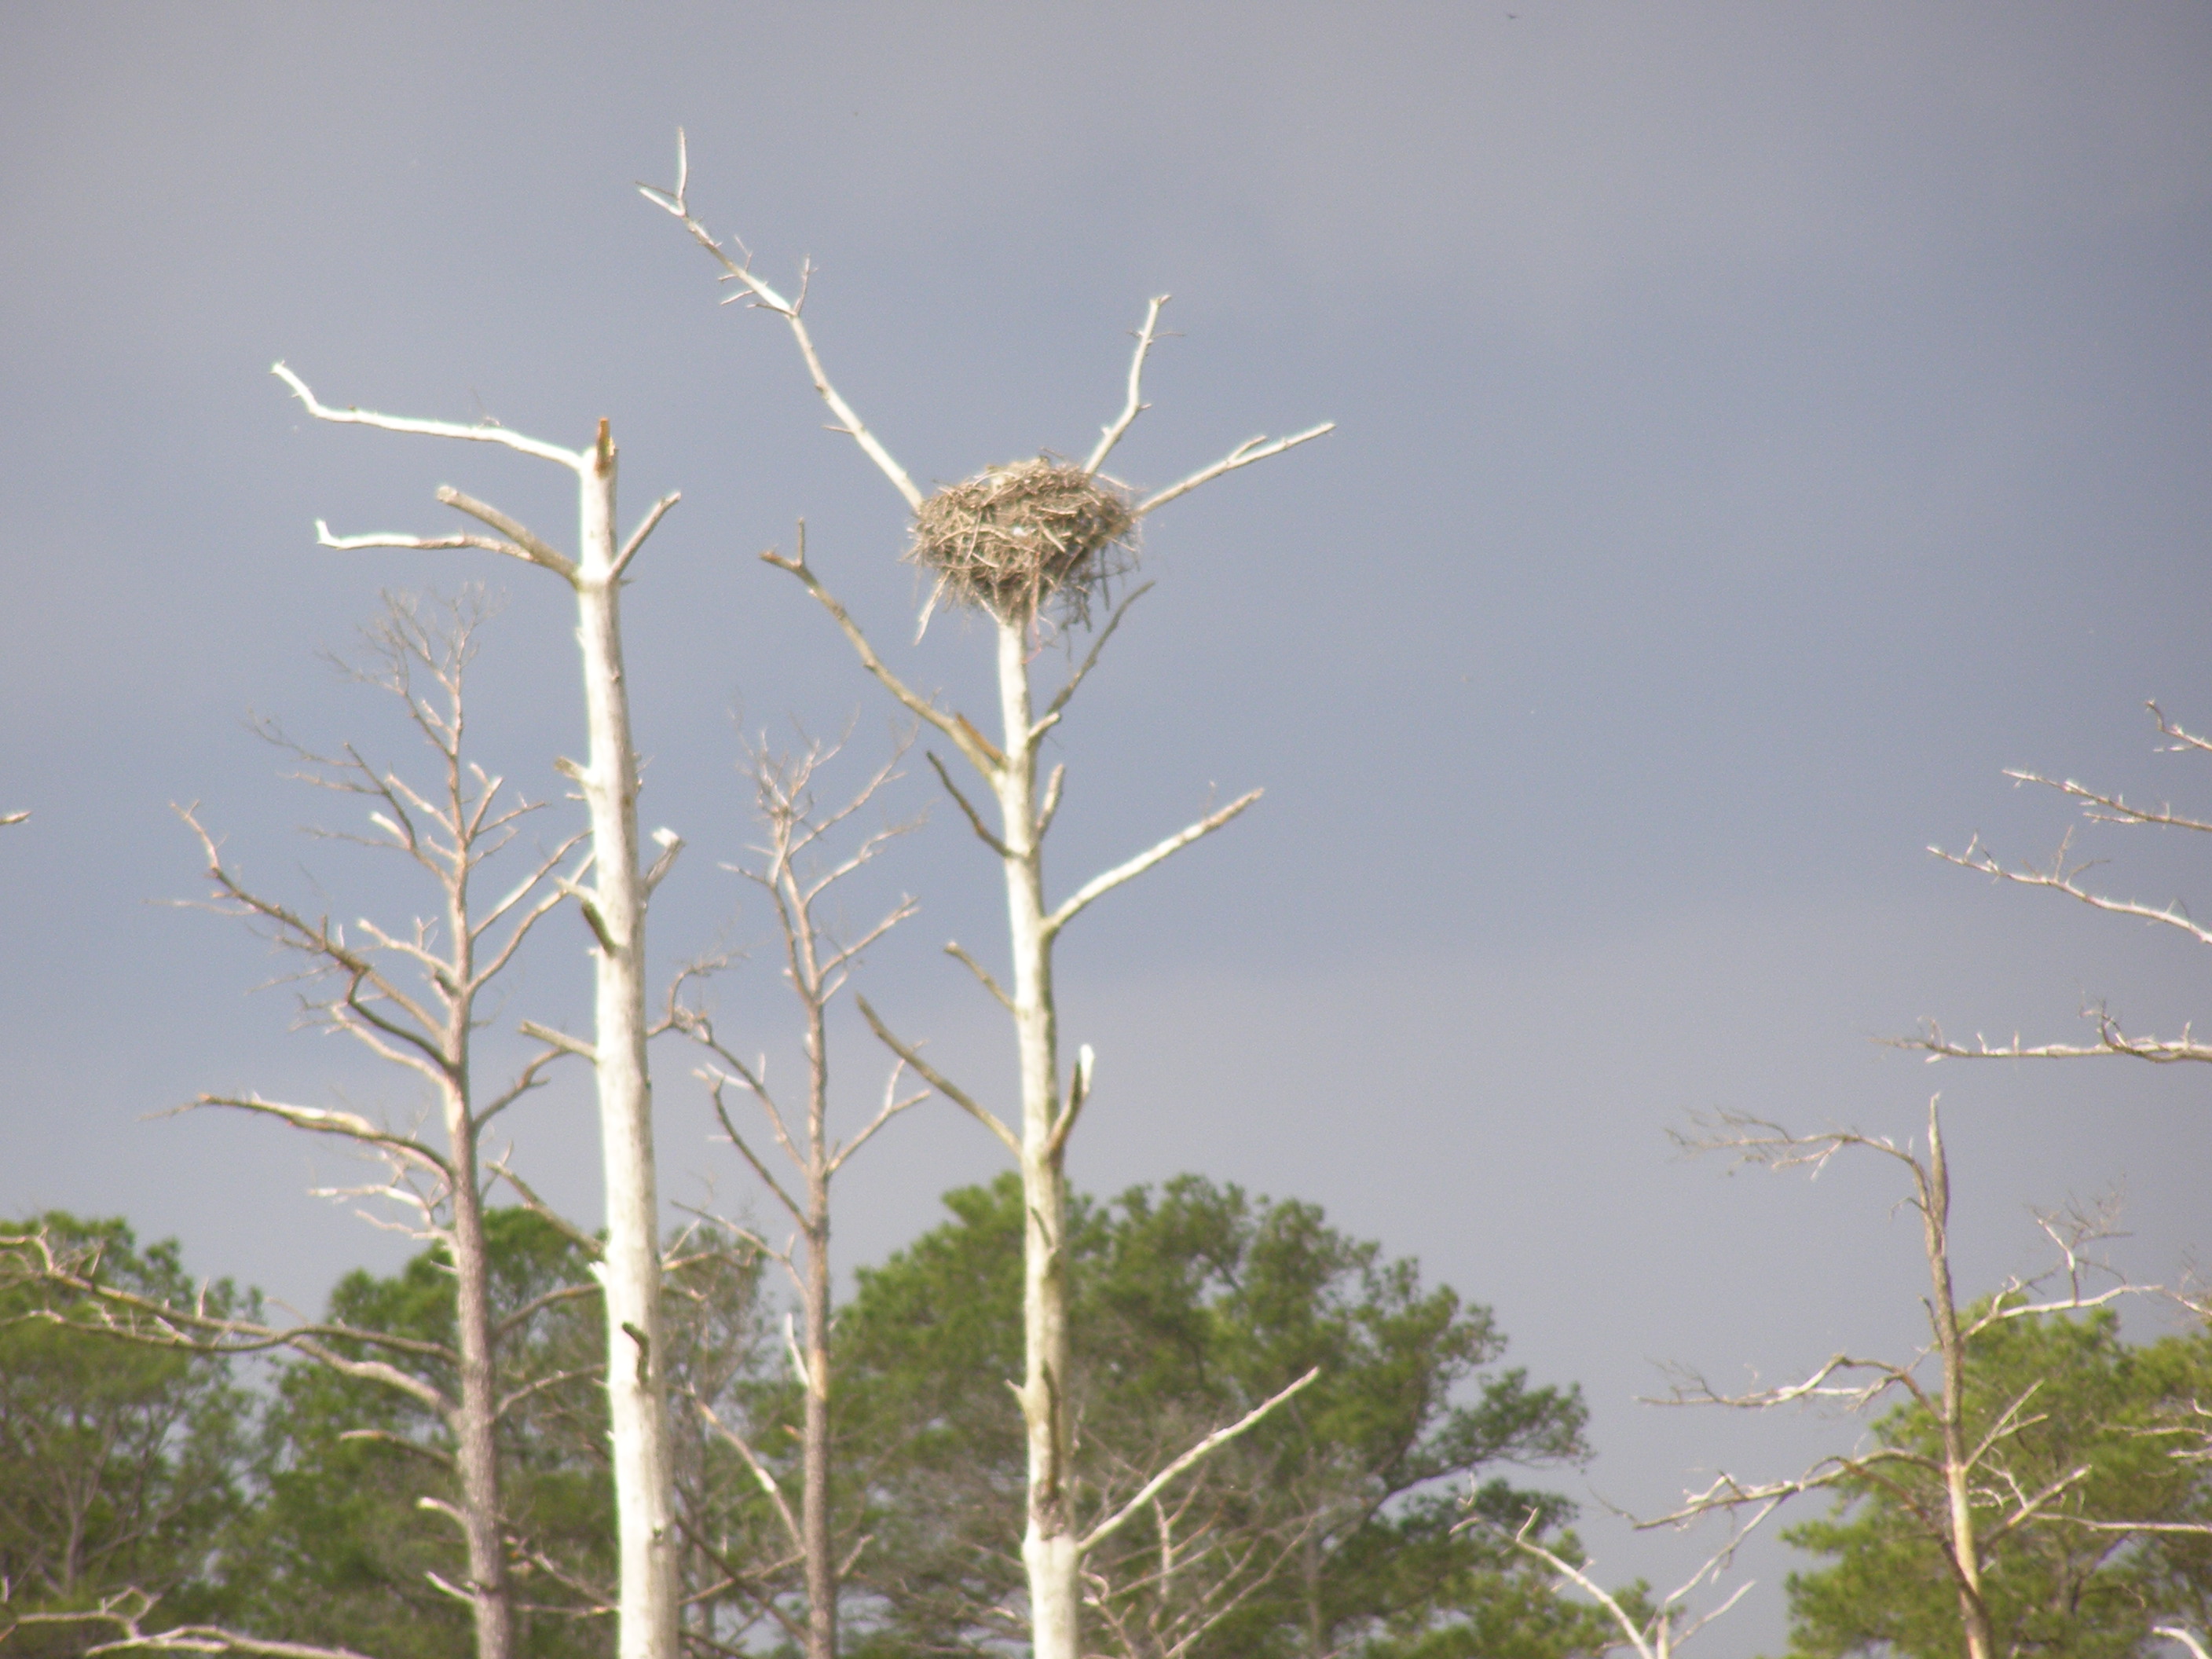 De - eagles nest photo